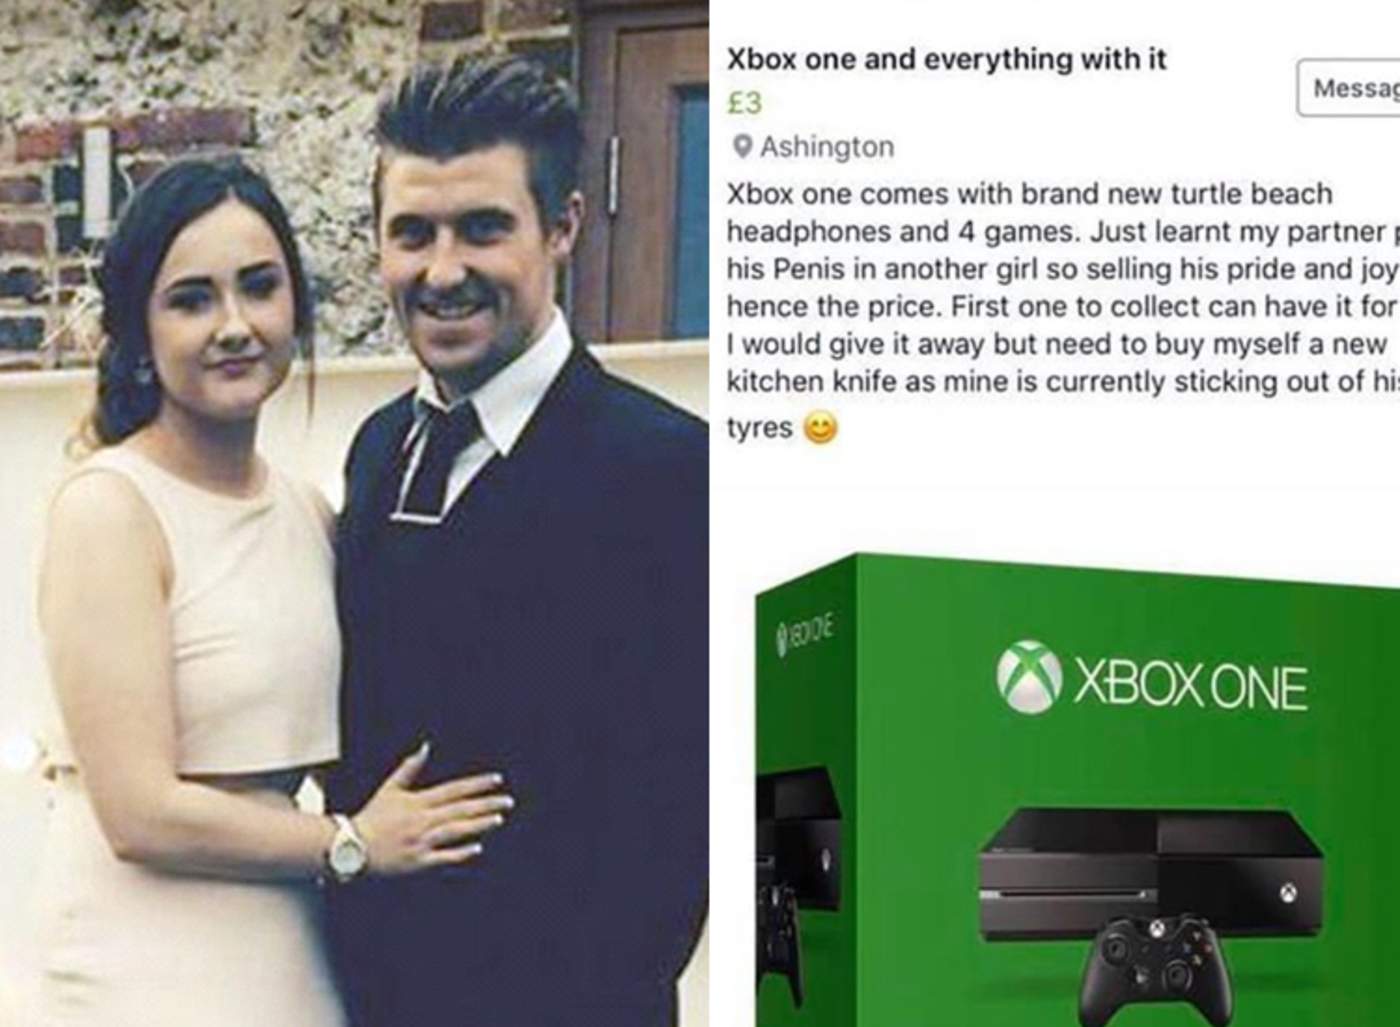 Su esposo le fue infiel y en venganza vende su Xbox One